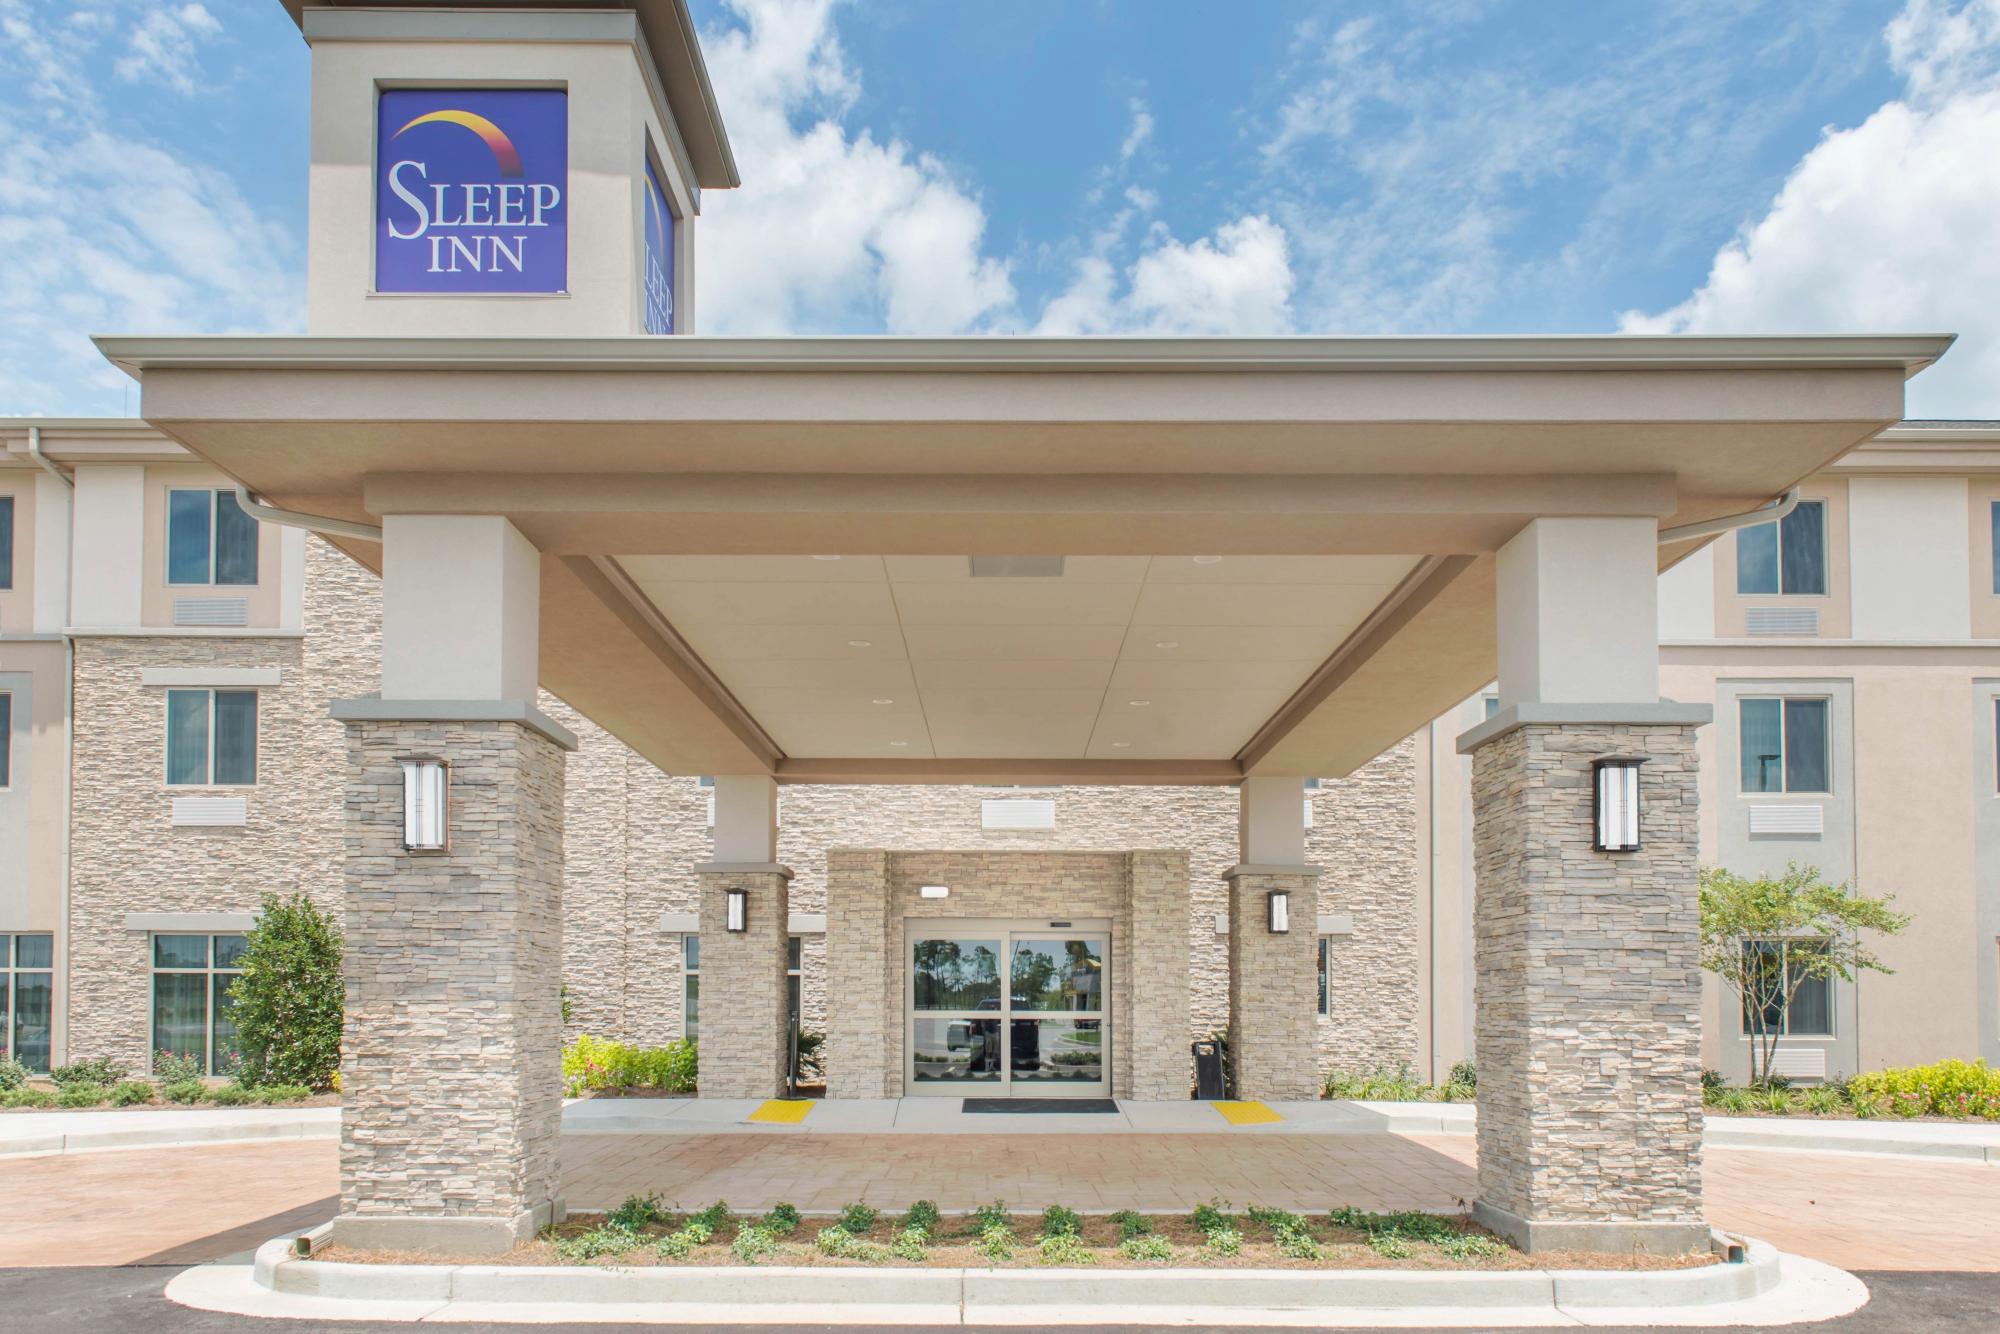 Photo of Sleep Inn & Suites Defuniak Springs/Crestview, Defuniak Springs, FL